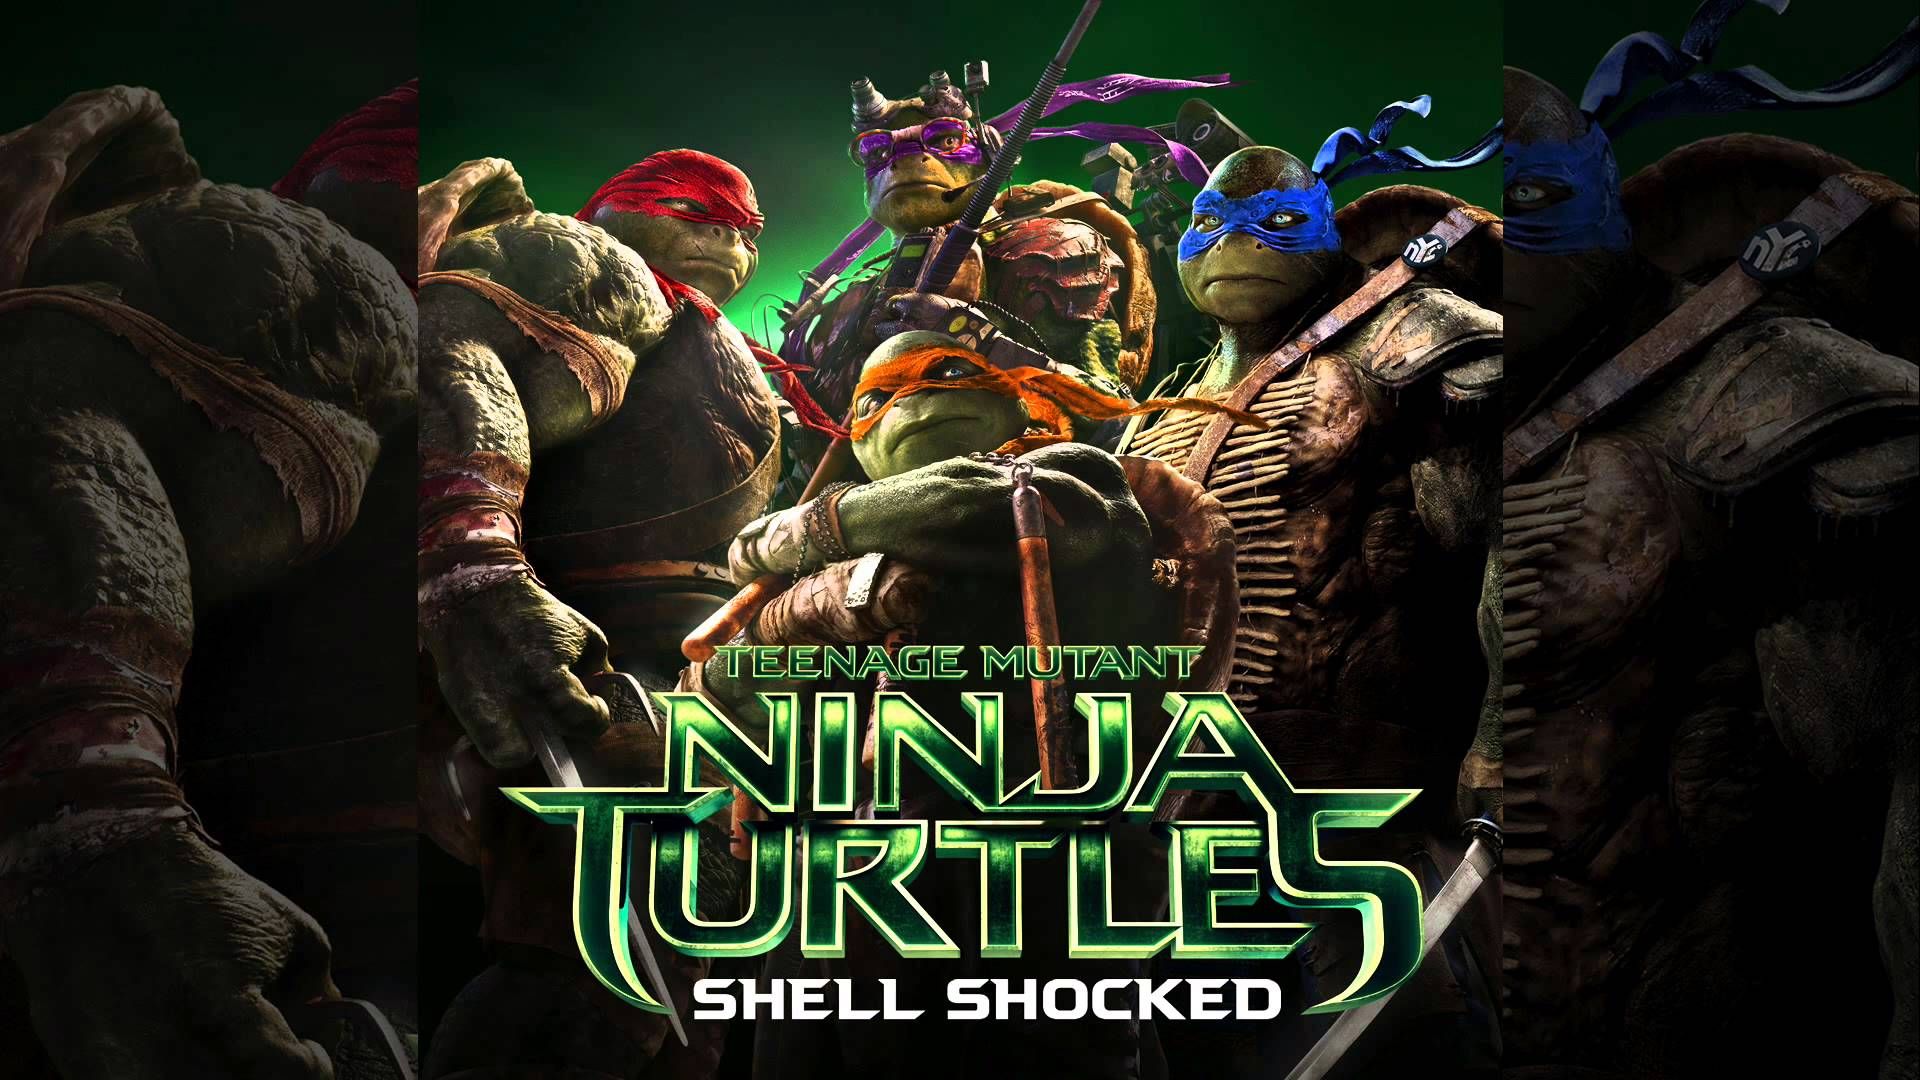 Жаңа Ninja Turtles саундтрегінде, әрине, тасбақалар туралы рэп трек бар